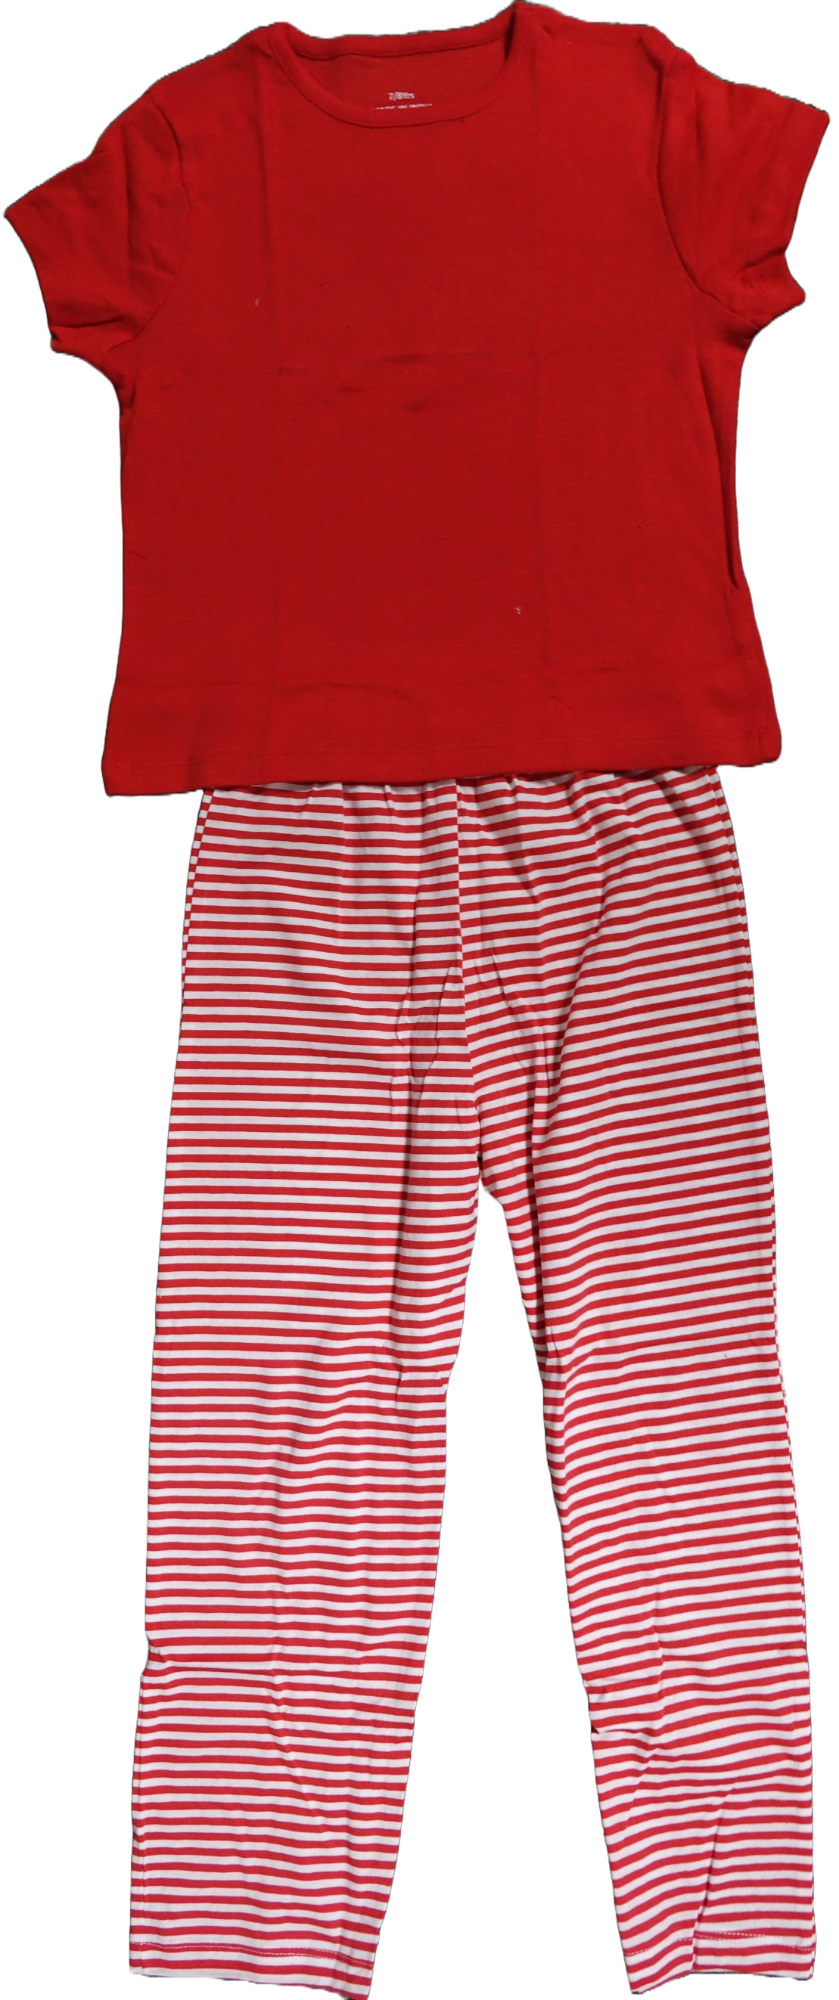 40 Girls Red Striped Pyjamas